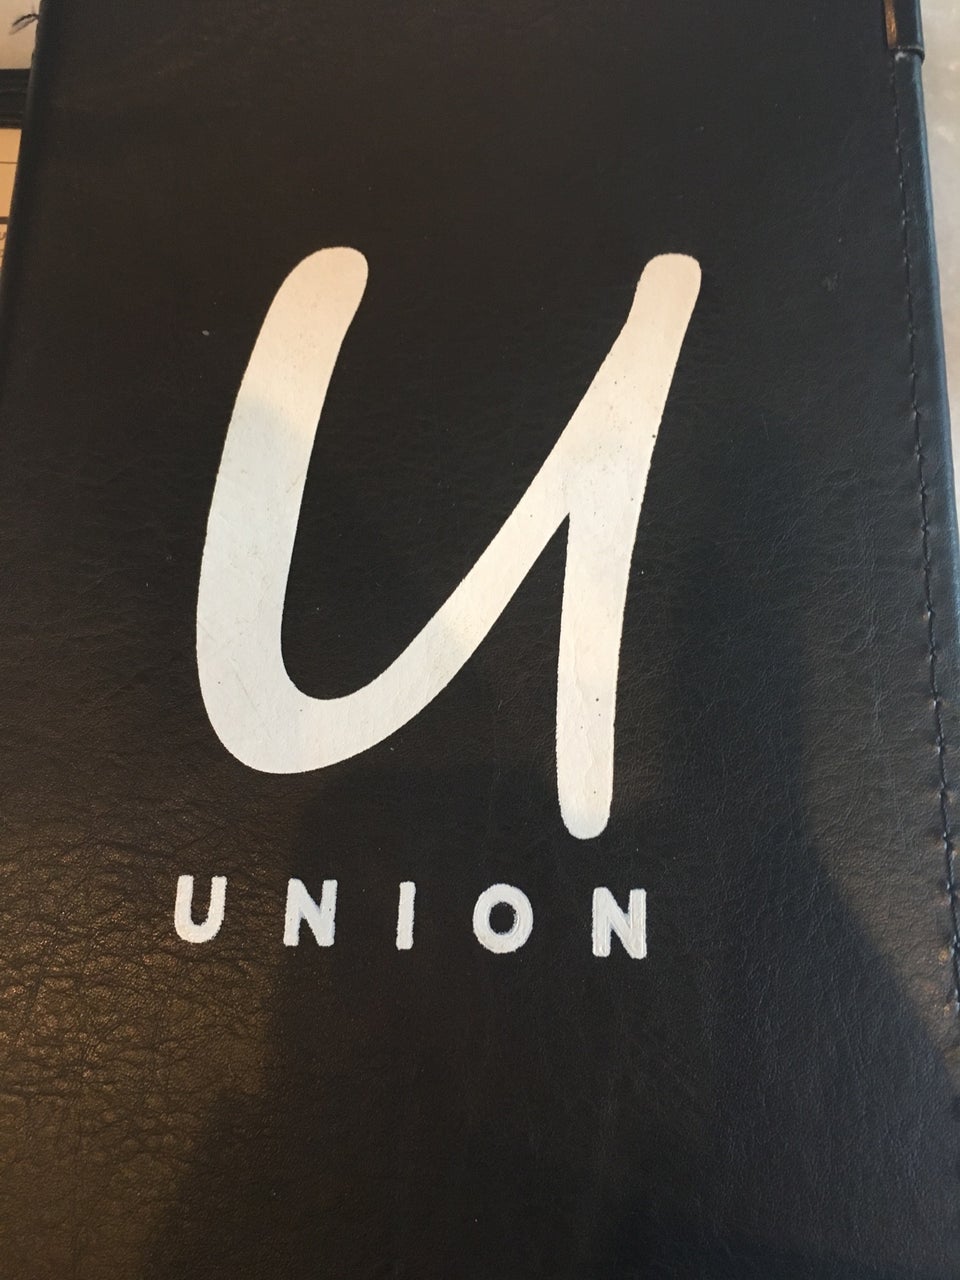 Photo of Union Cafe Bar